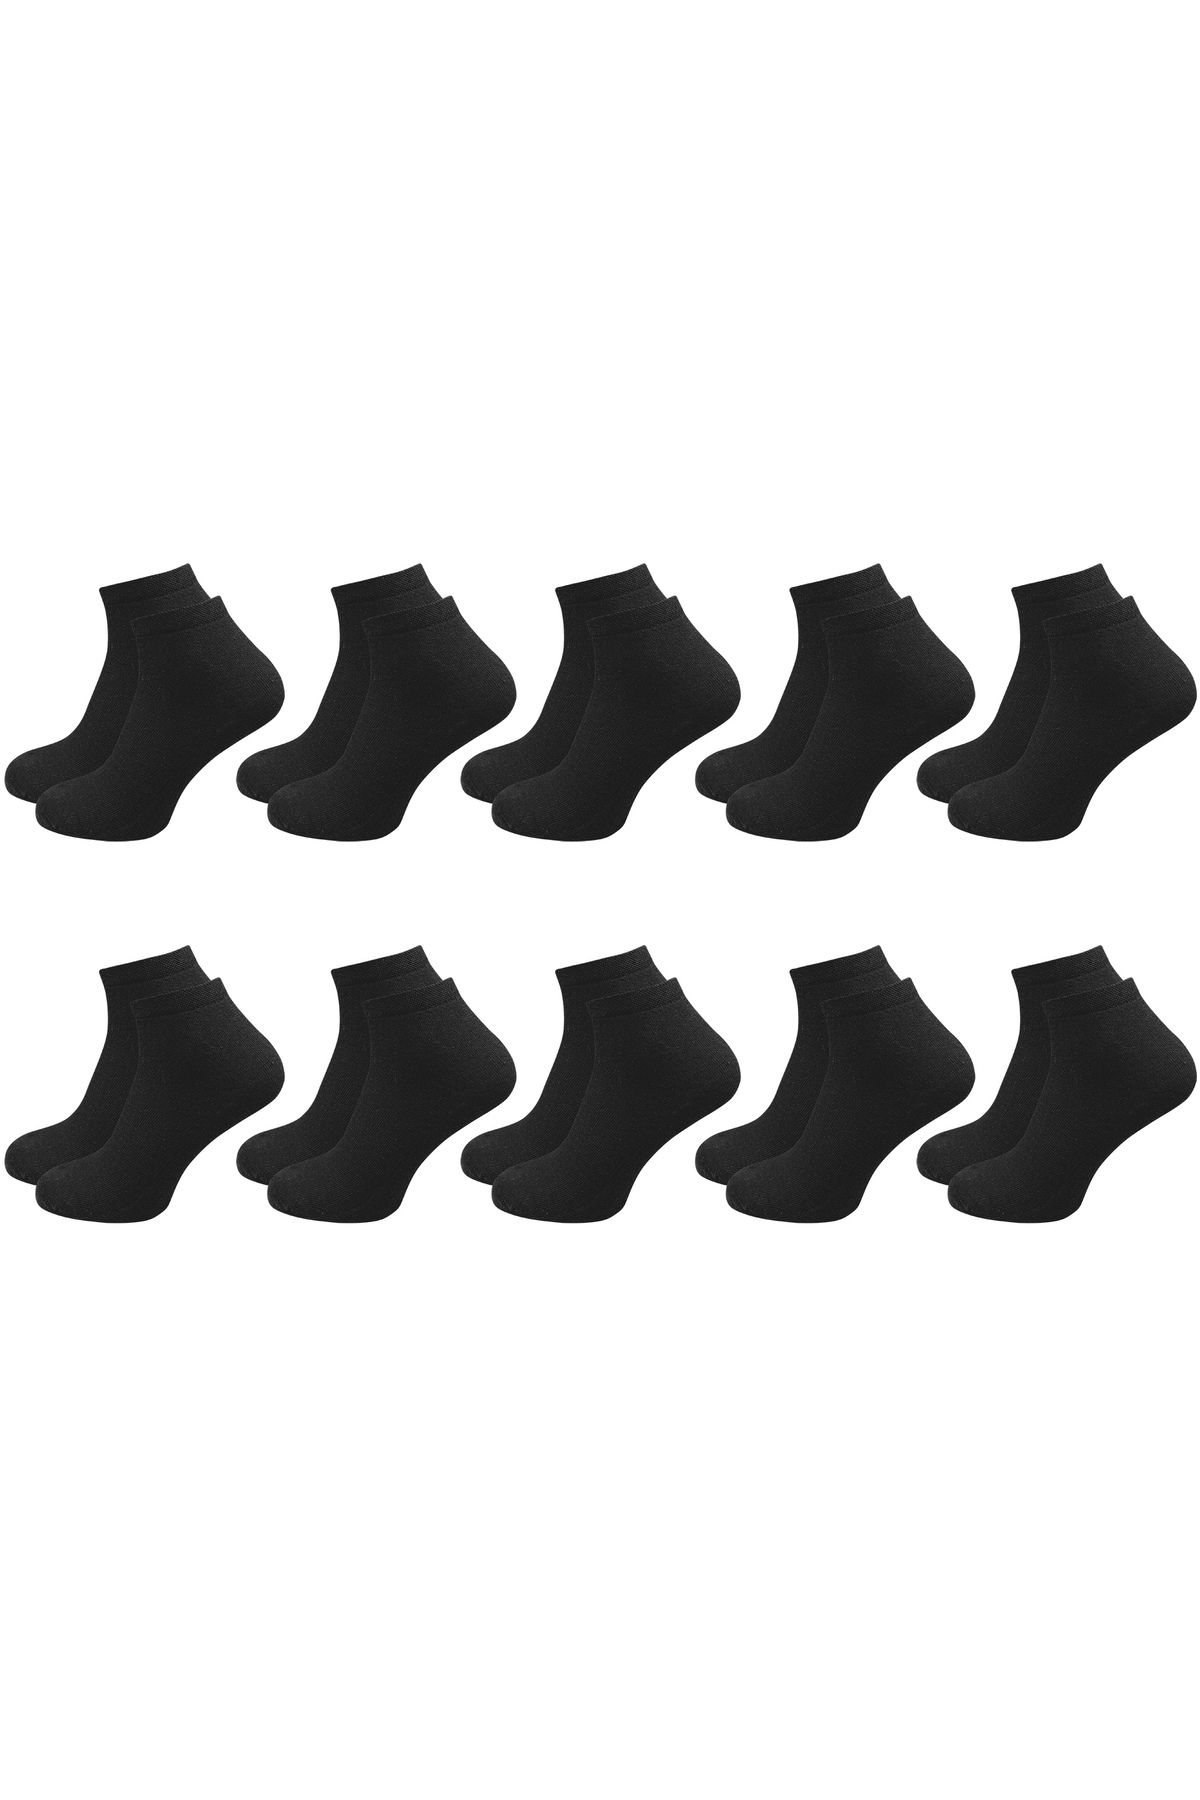 ANTHONY JACKSON 10 Çift Kutulu BAMBU Premium Bay-Bayan Patik Çorap - Bilek Boy Kısa Spor Koşu ve Yürüyüş Çorabı